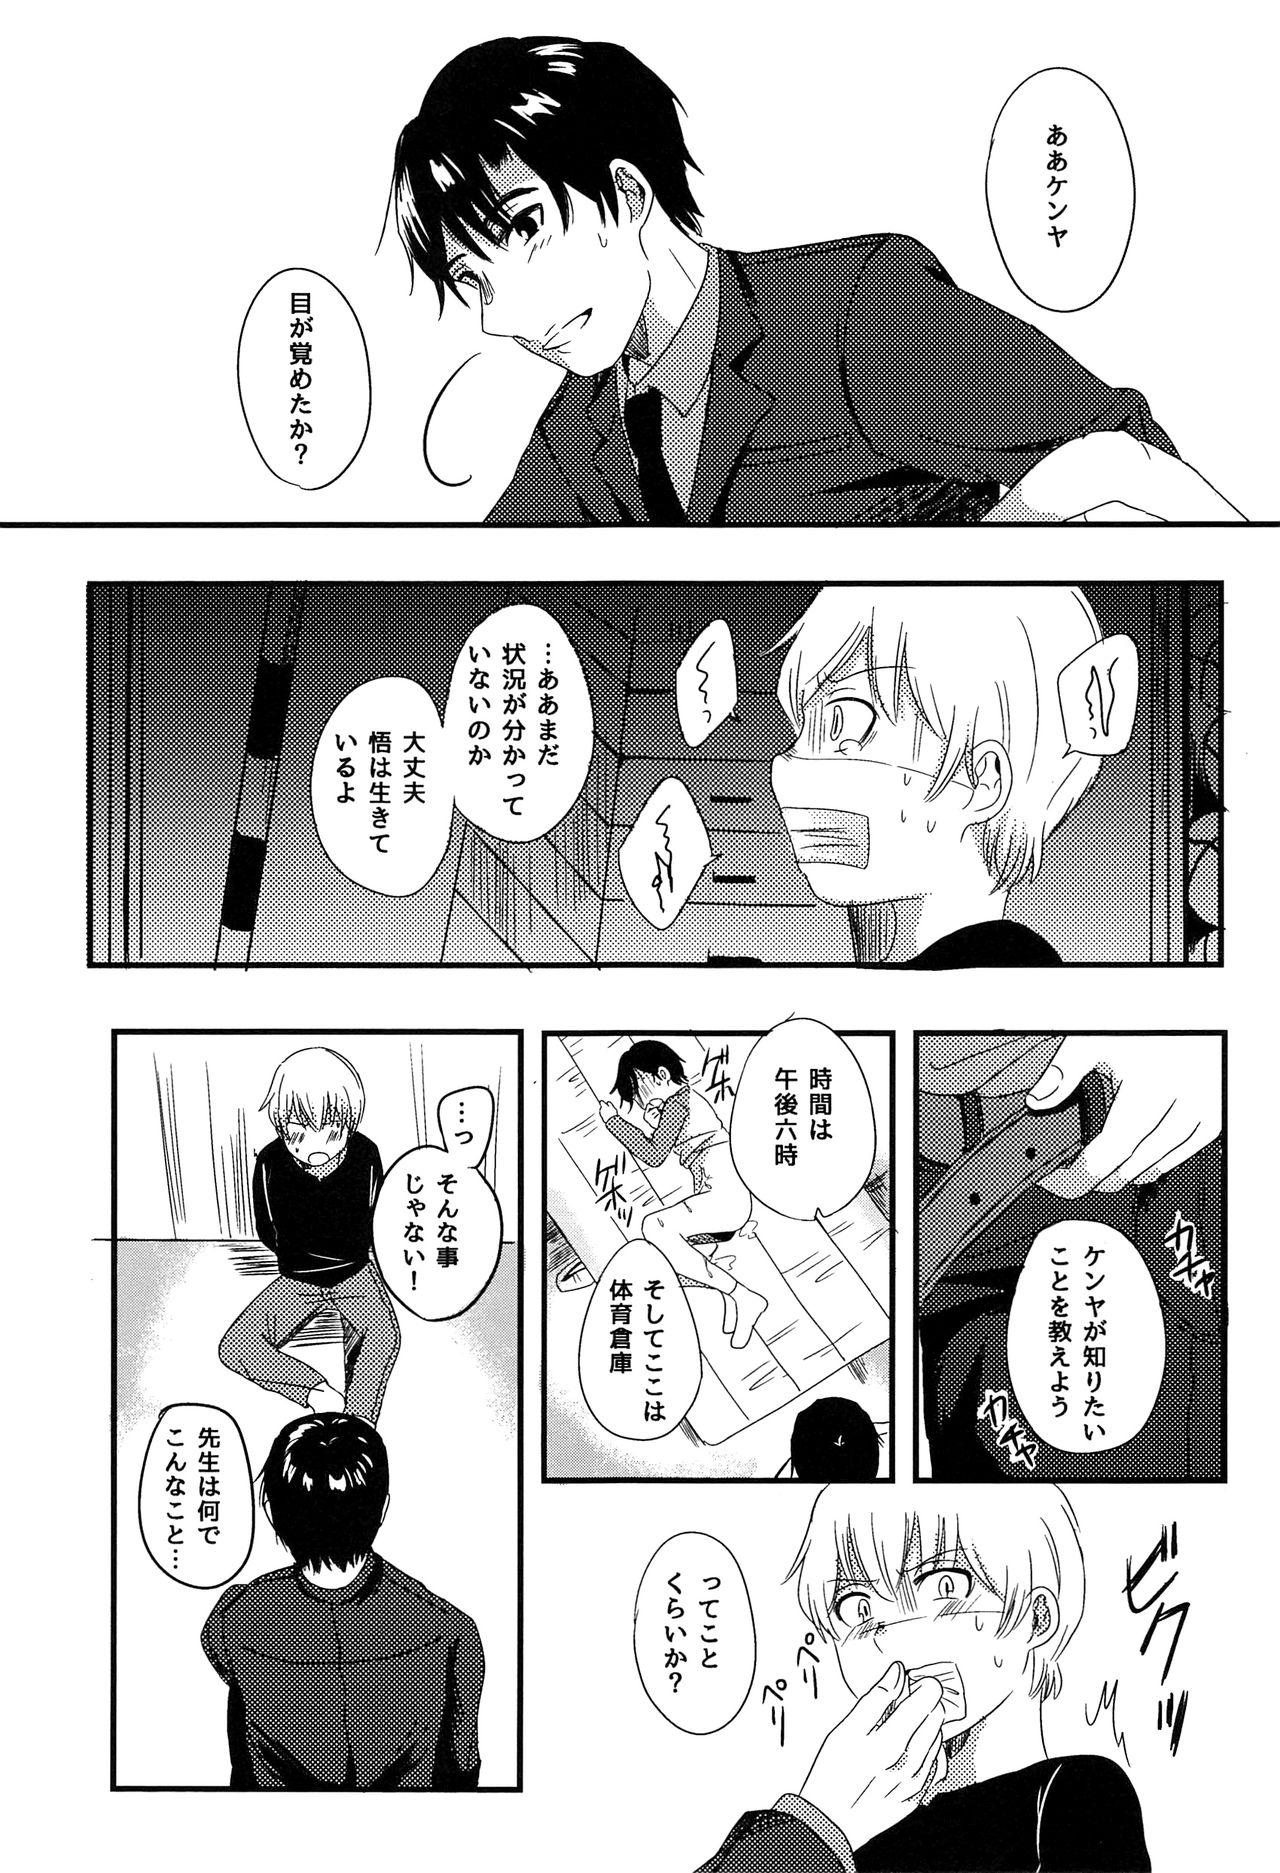 Slut Daisuki! - Boku dake ga inai machi Classroom - Page 8